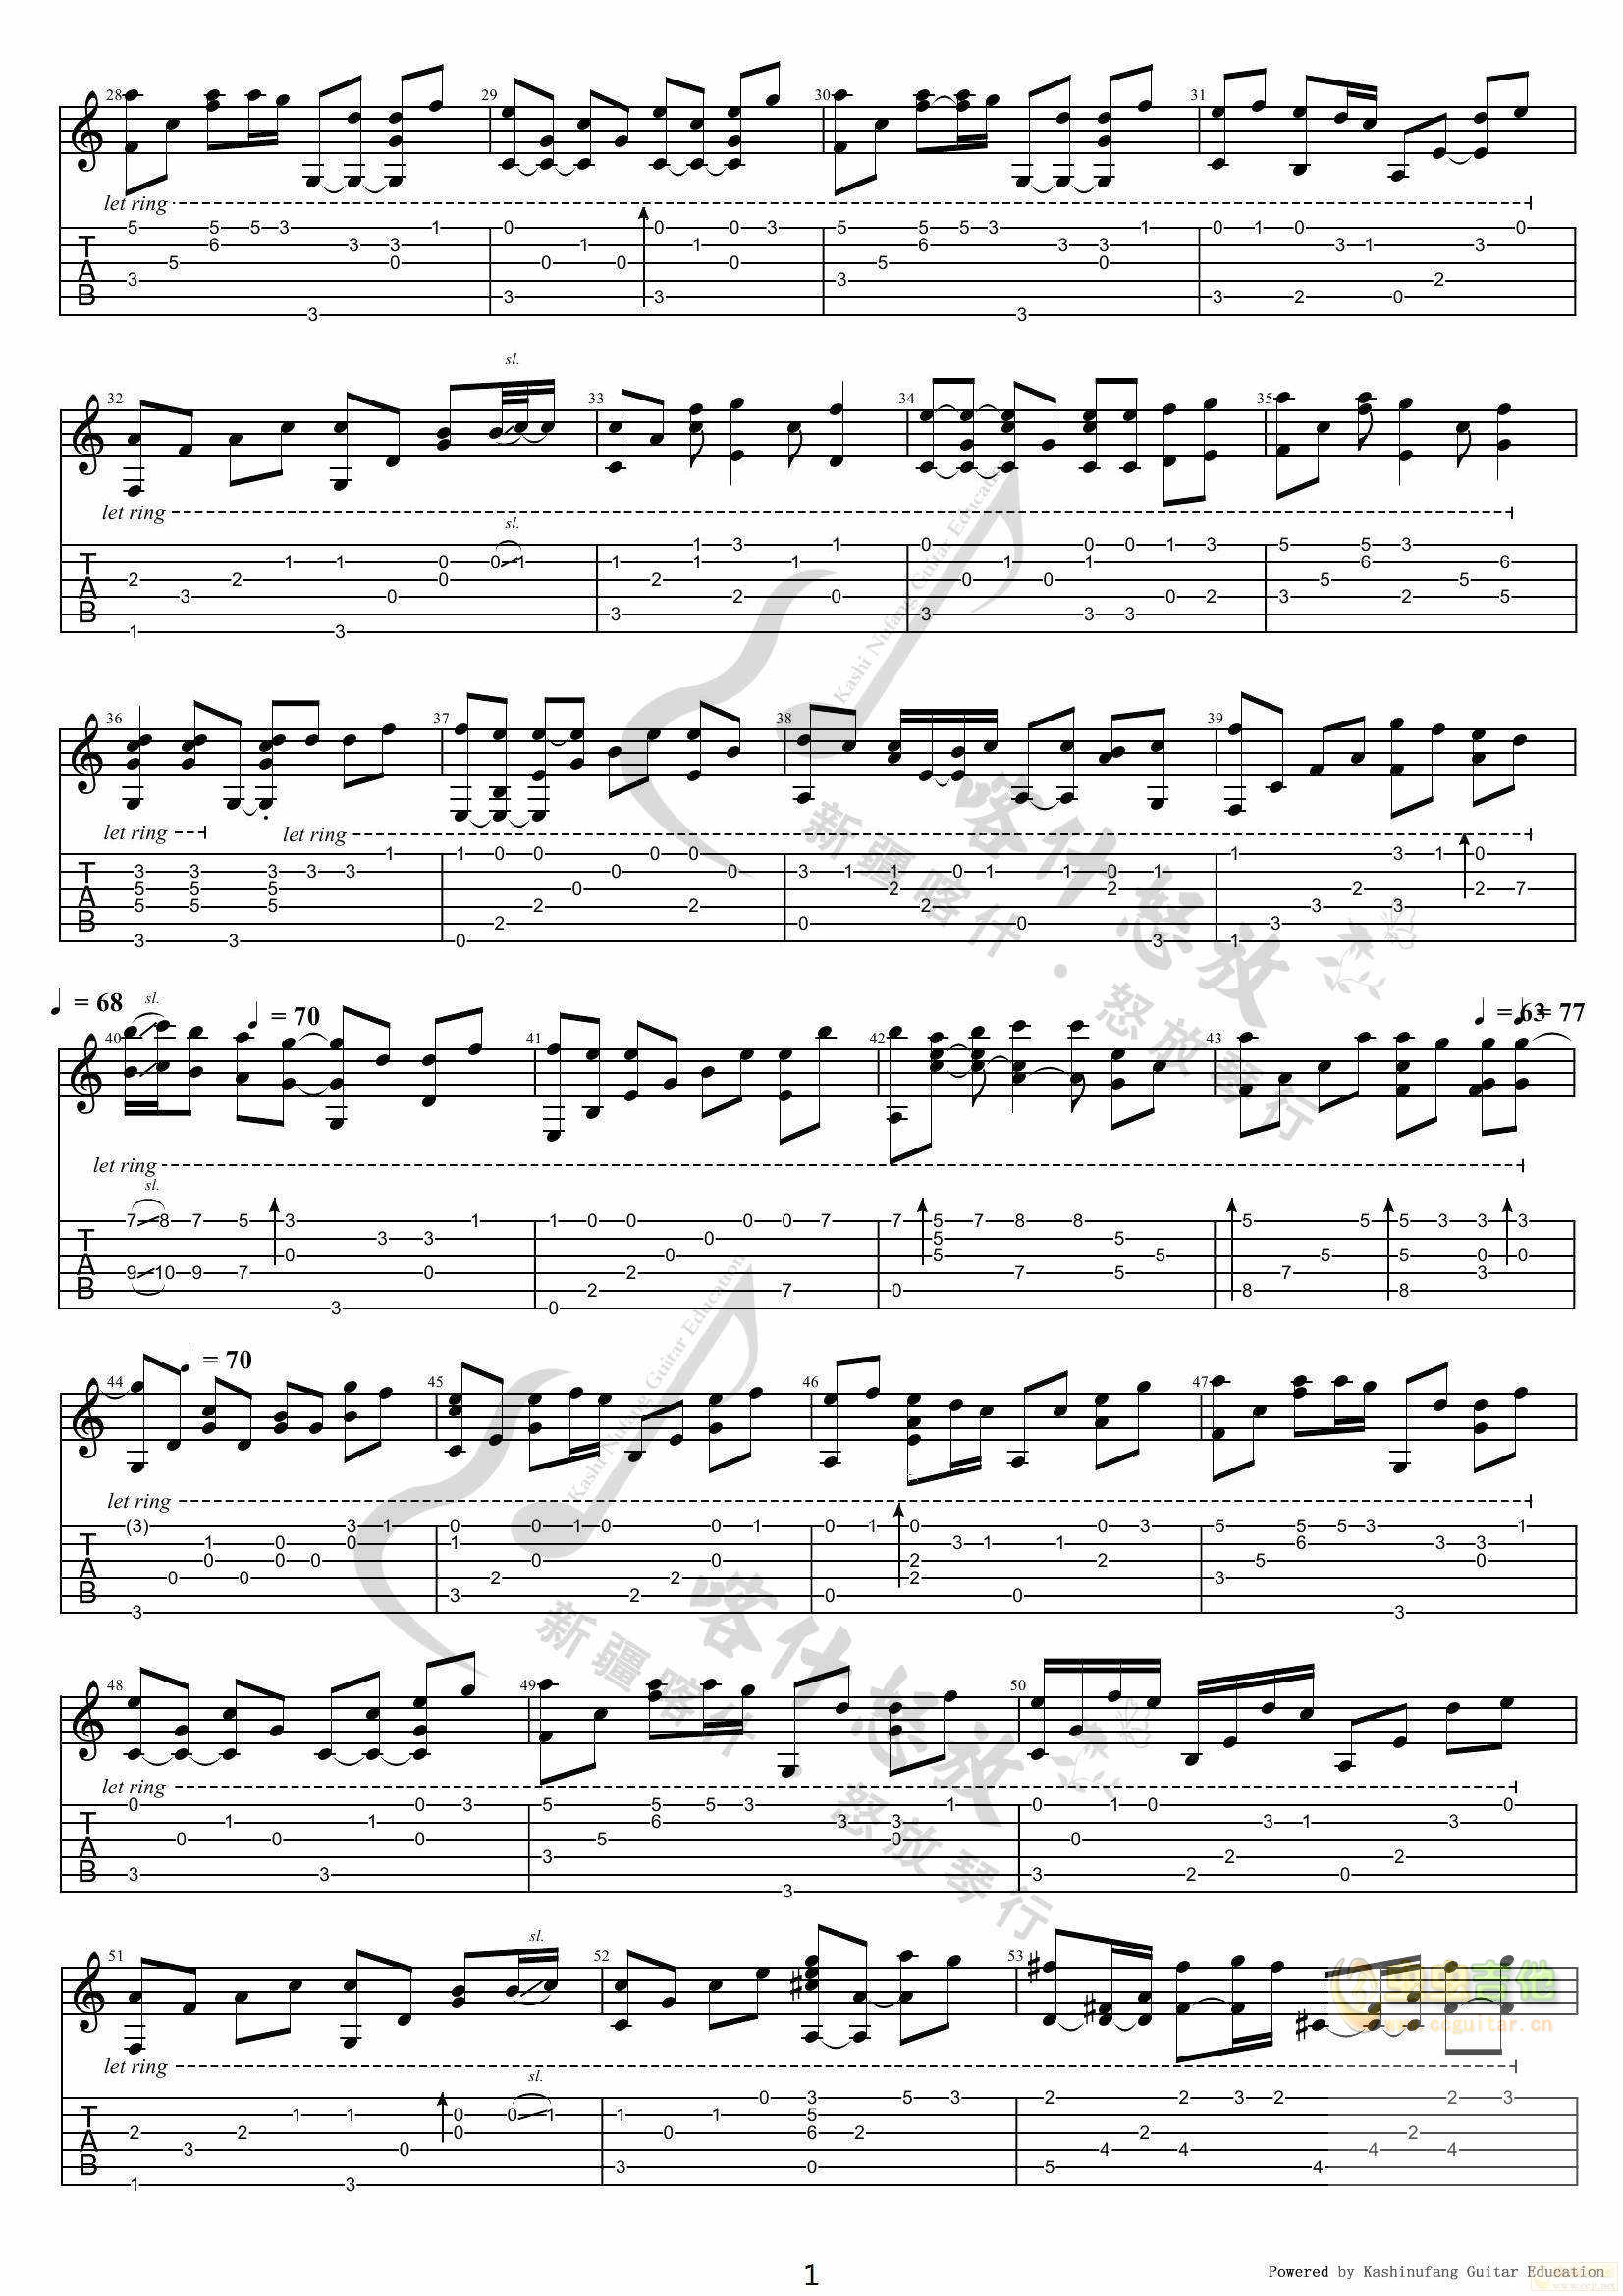 童话-光良五线谱预览1-钢琴谱文件（五线谱、双手简谱、数字谱、Midi、PDF）免费下载